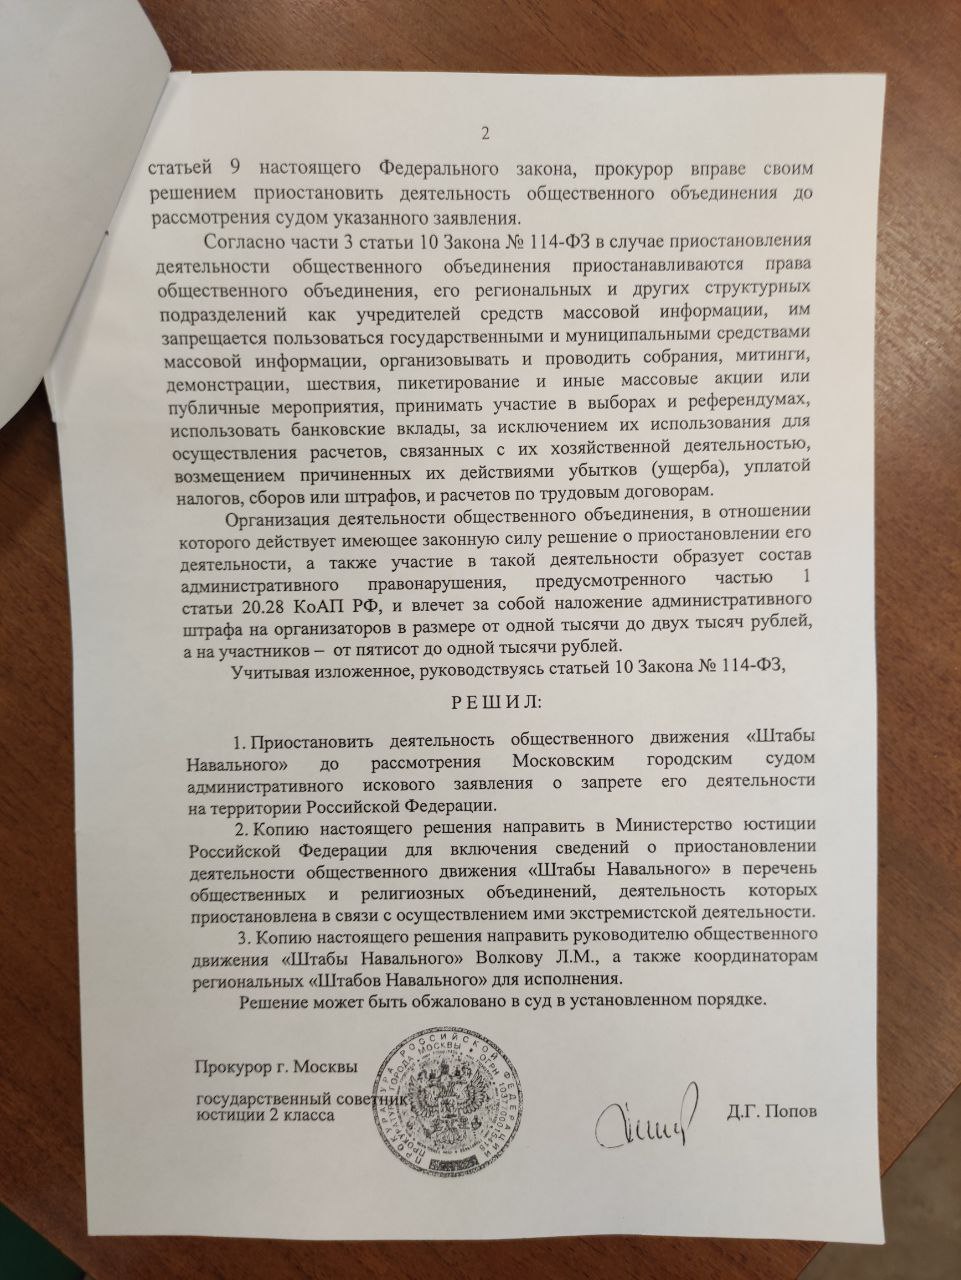 В РФ приостановили деятельность штабов Навального и ФБК. Скриншот твиттера Жданова